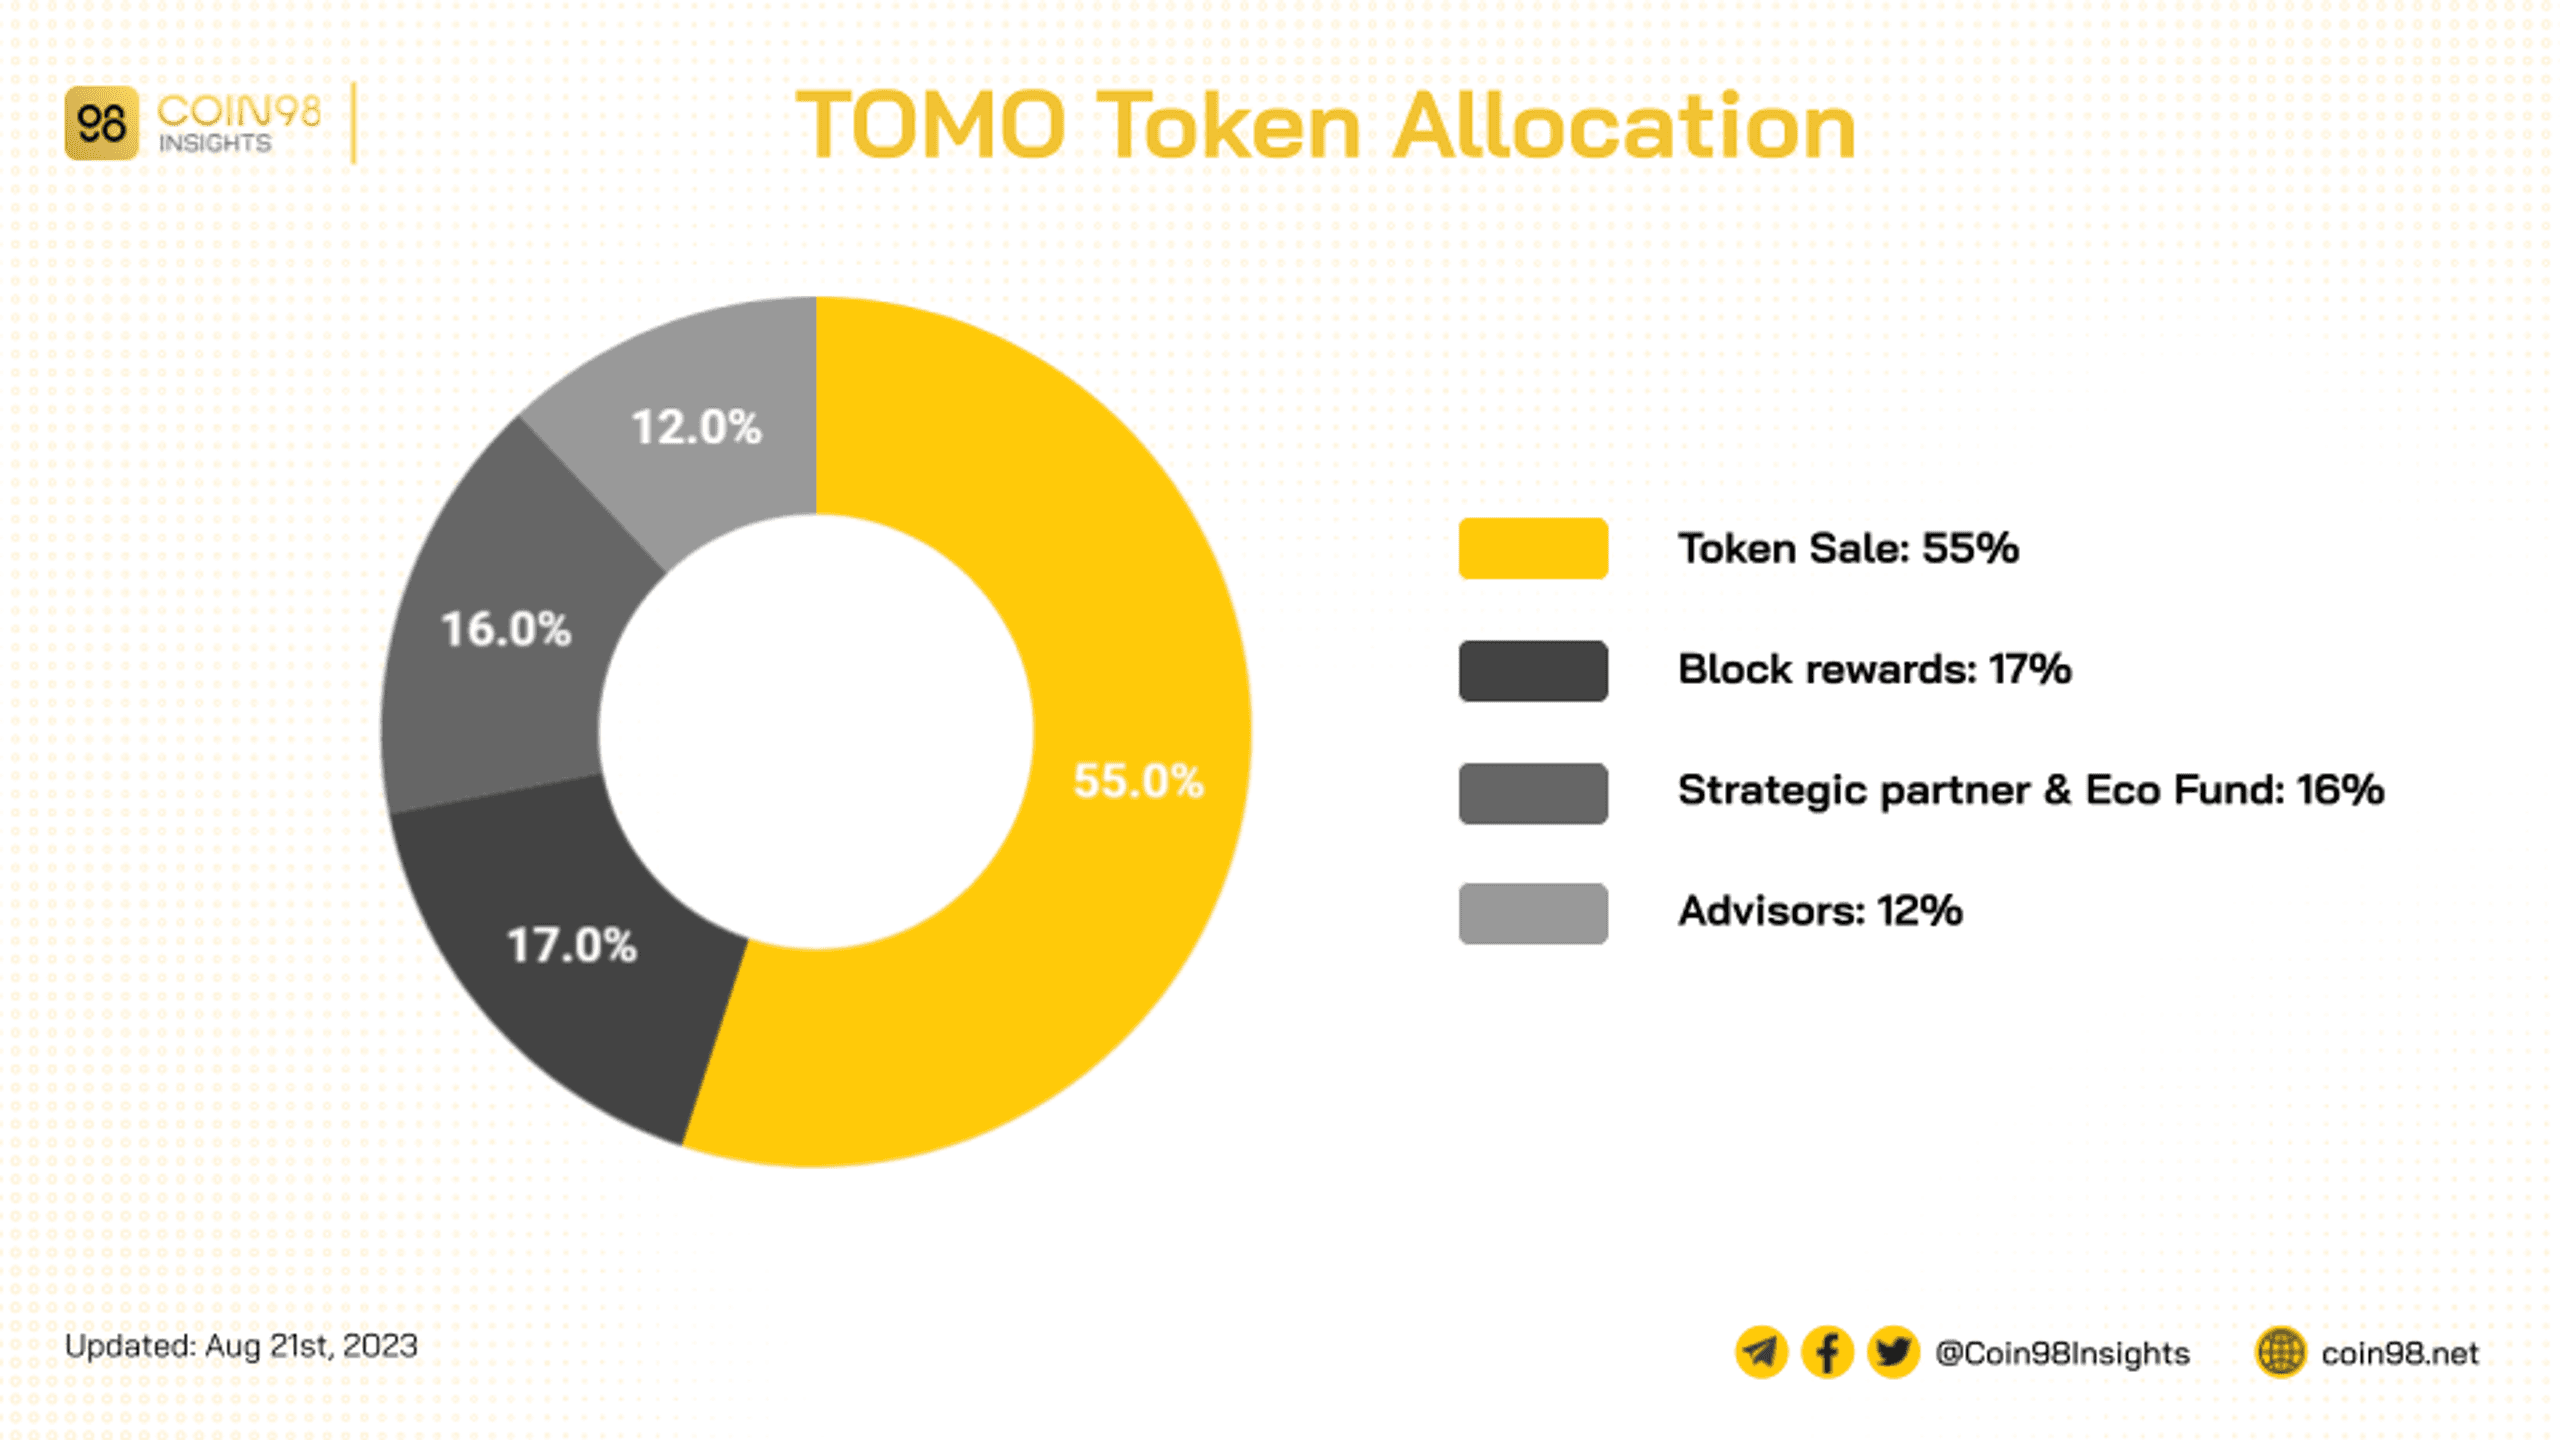 lượng tomo được phân bổ phần lớn cho token sale